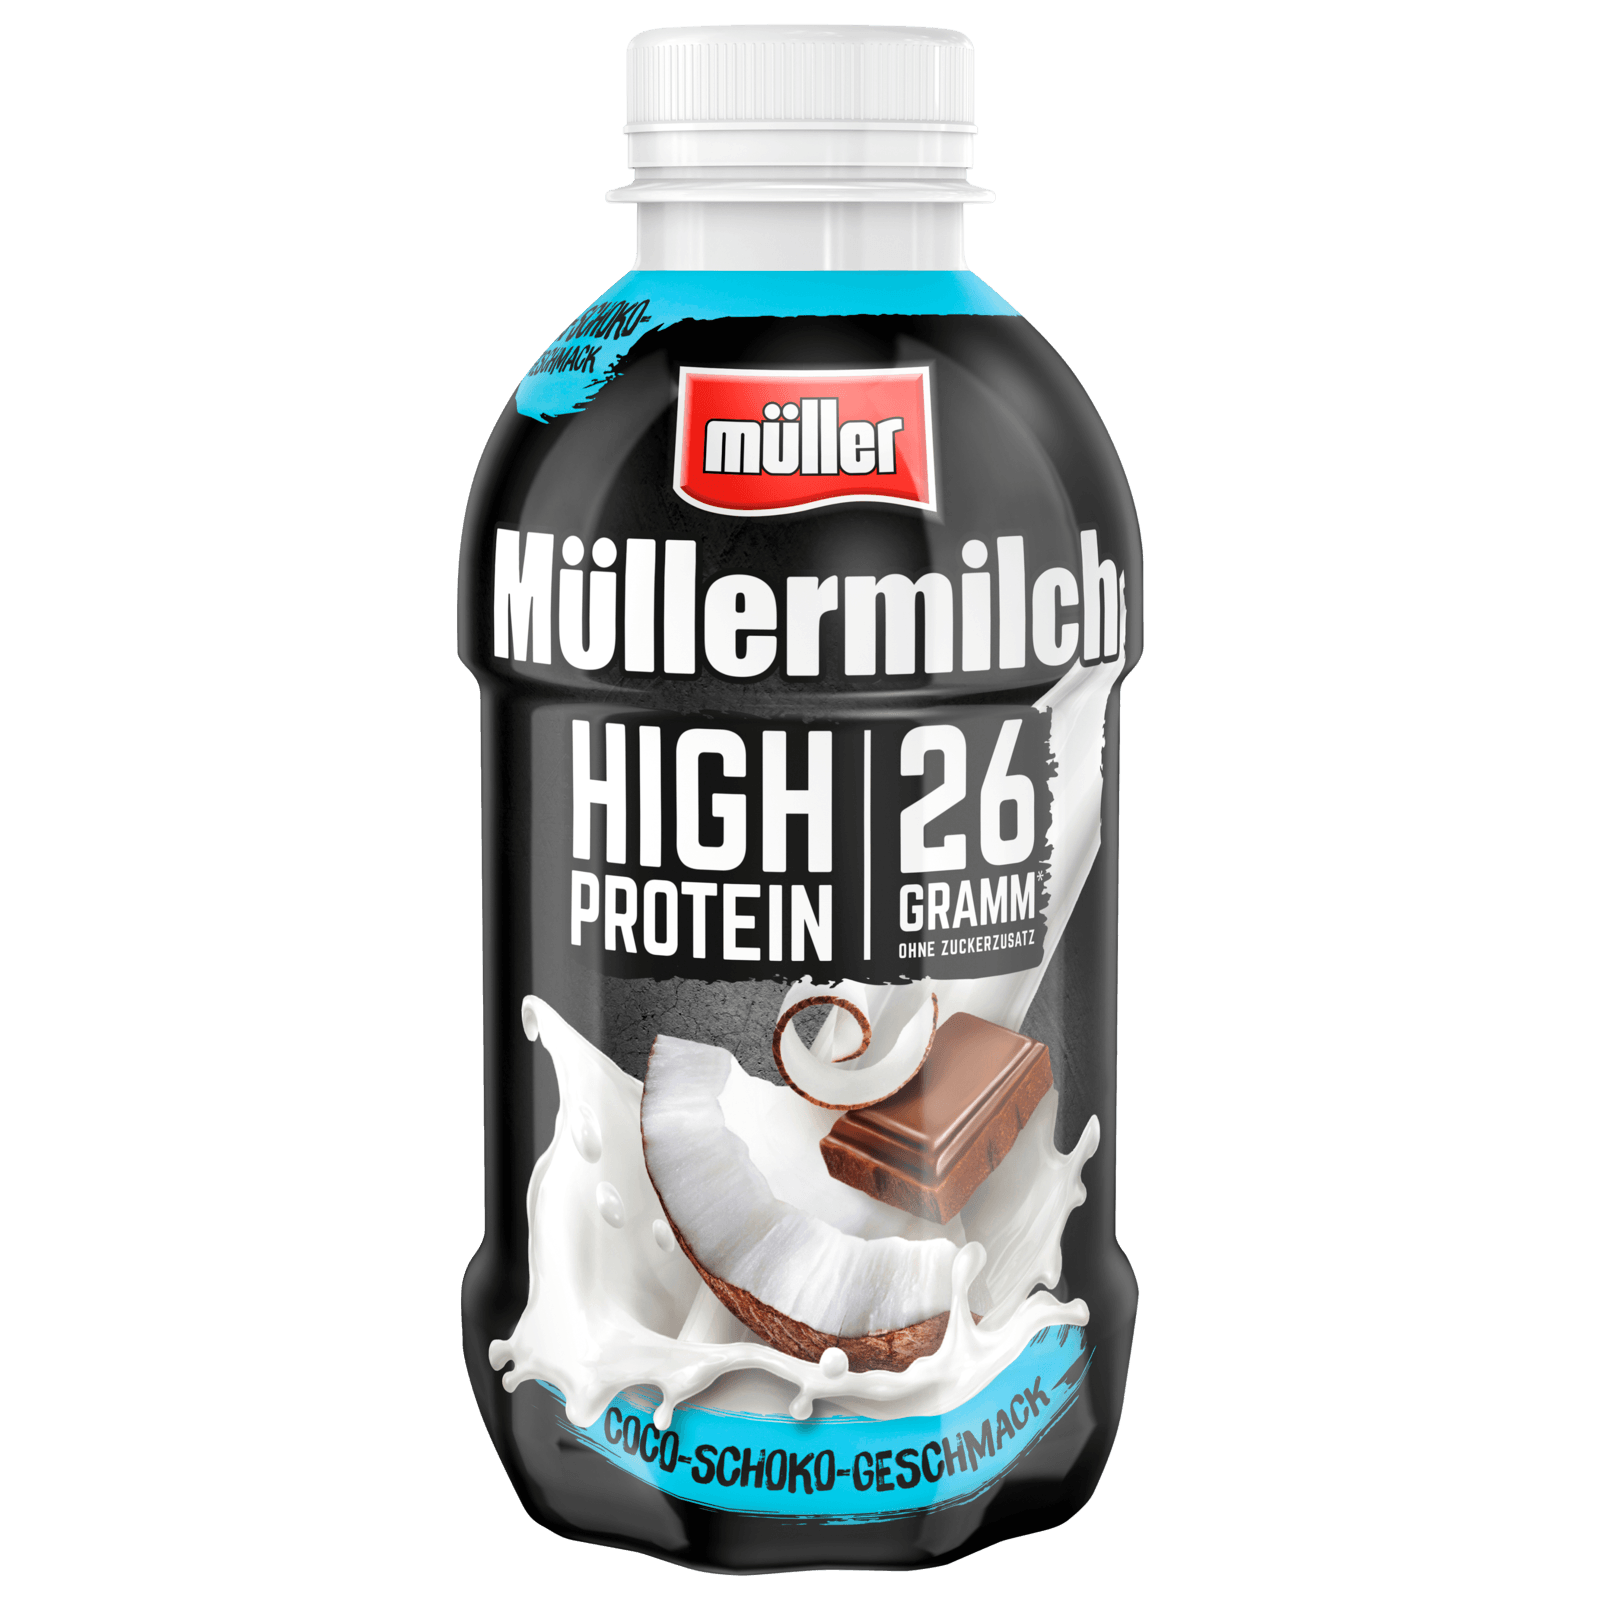 Müller Müllermilch High Protein Coco-Schoko 400ml REWE online bei bestellen